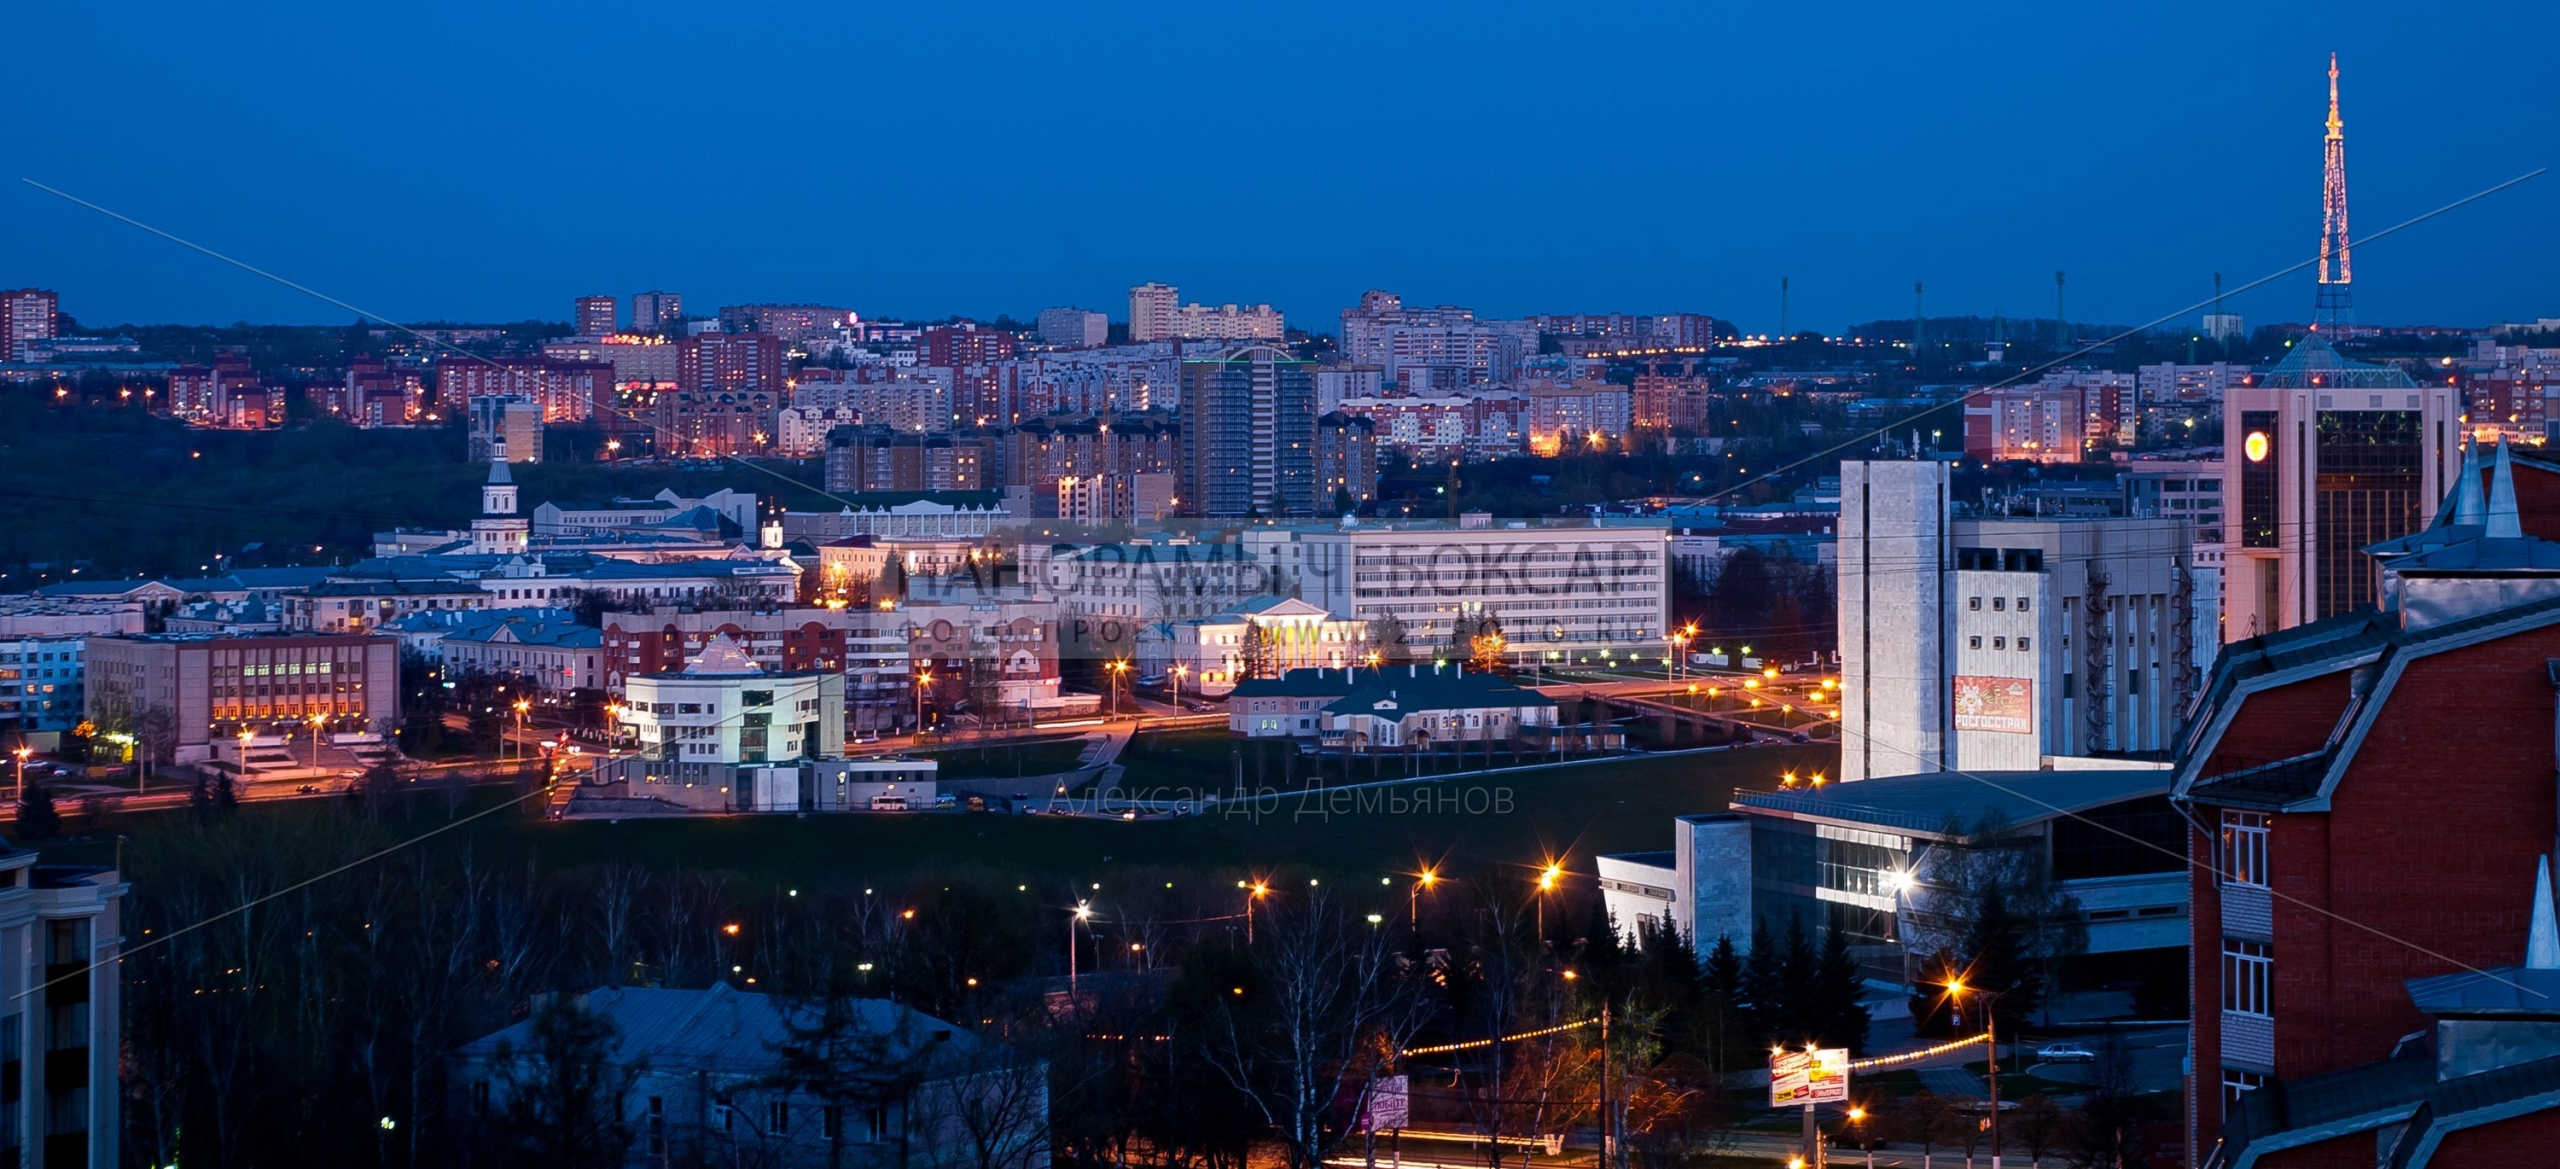 Фото телебашни и центра города Чебоксары в сумерках весной